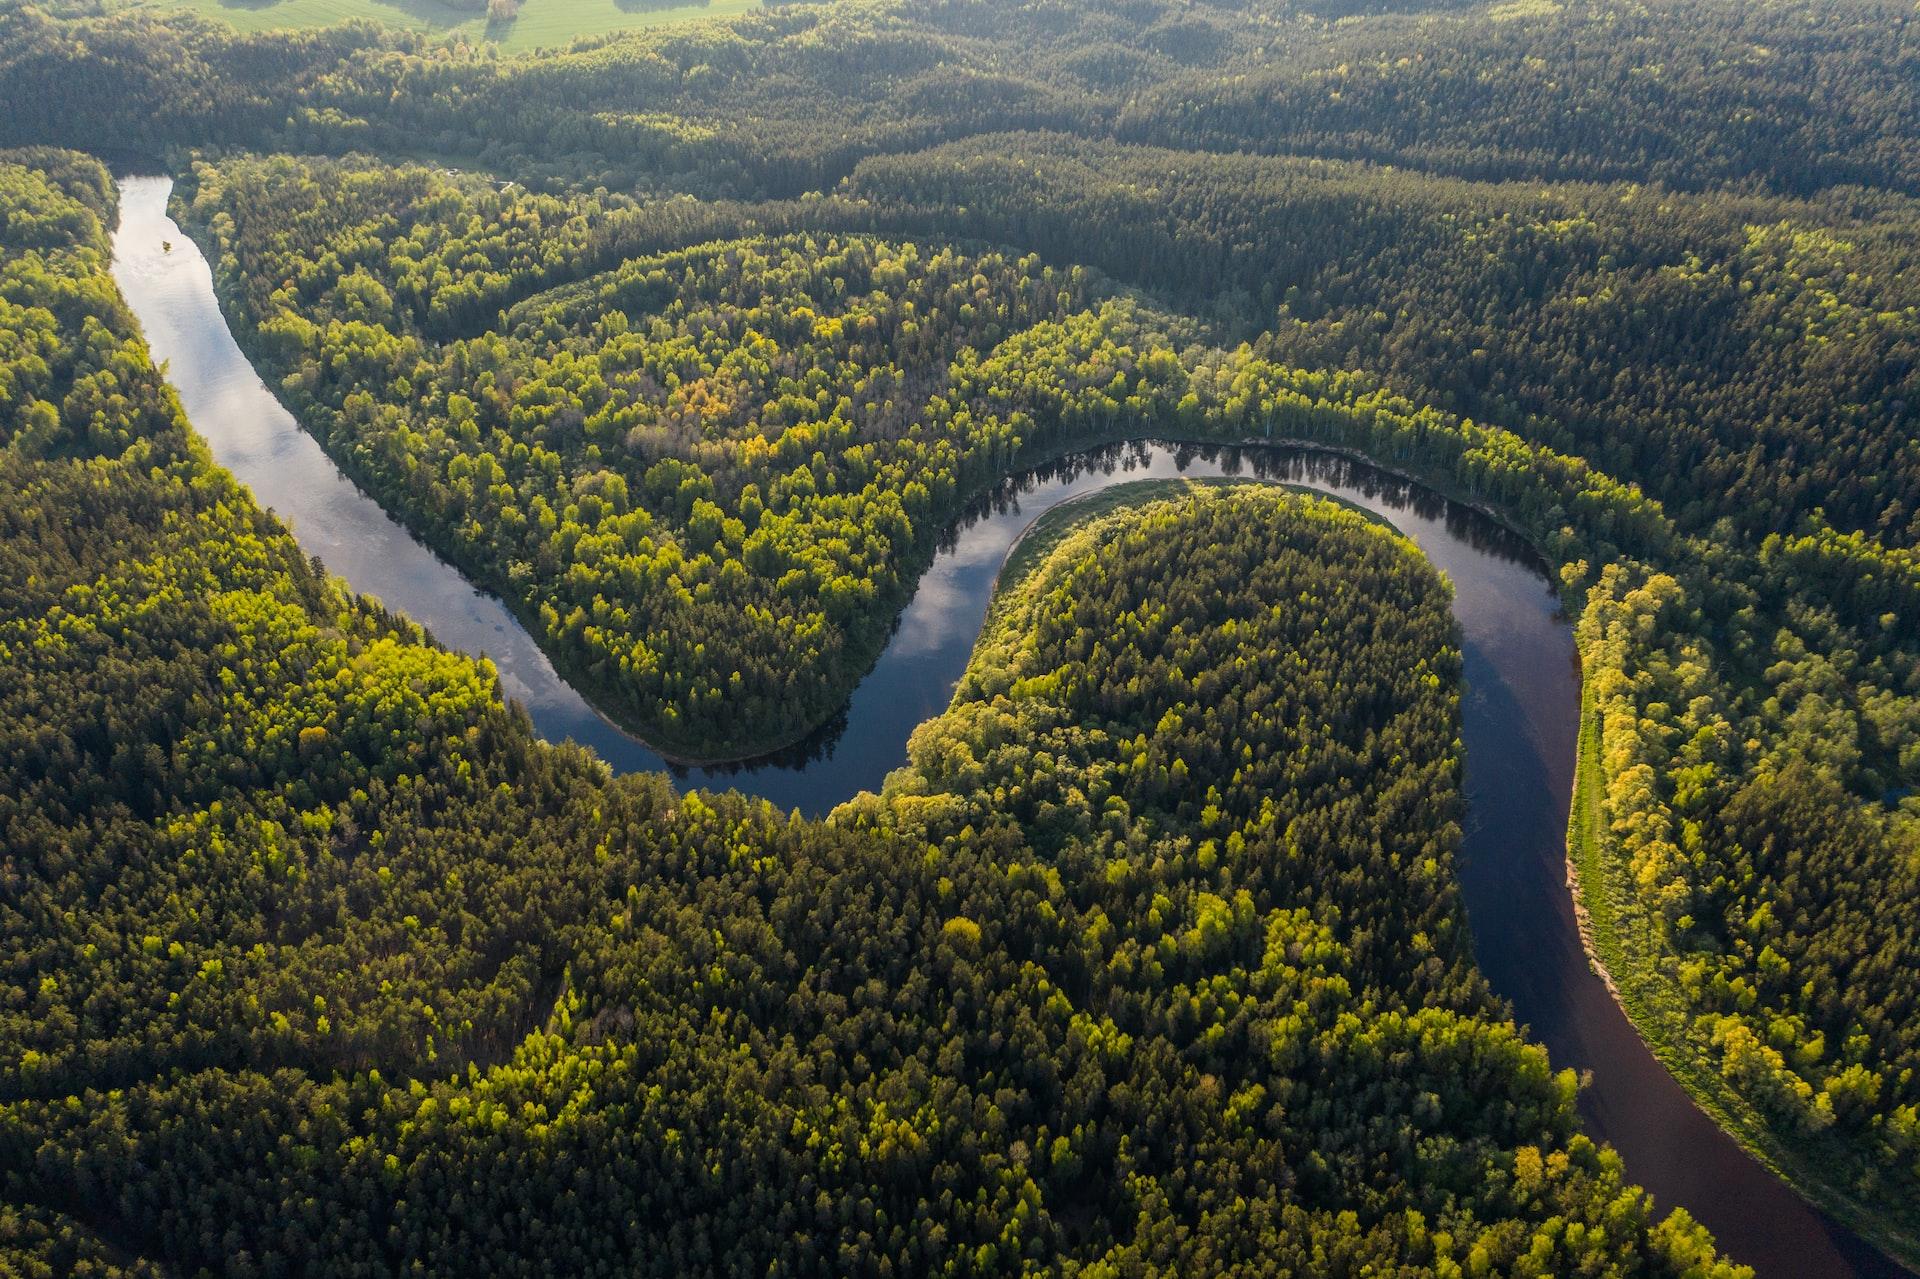 Foto aérea de um rio com curso em S, com floresta ao redor